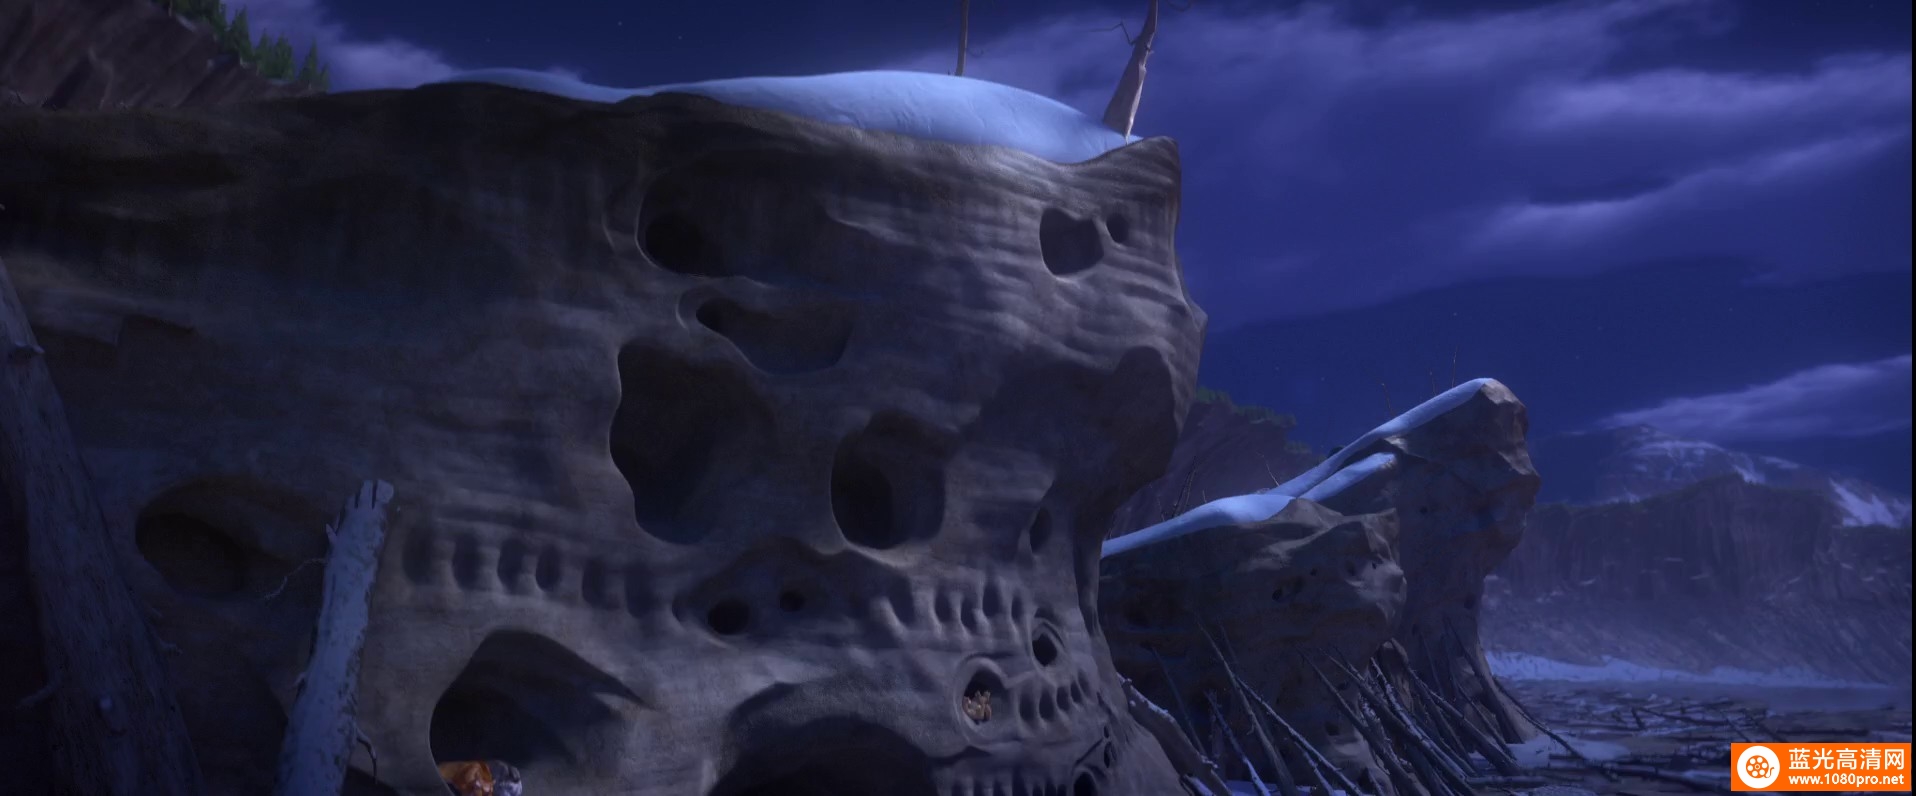 [2016][美国][动画]《冰川时代5:星际碰撞》3D 多版本注意区分-4.png